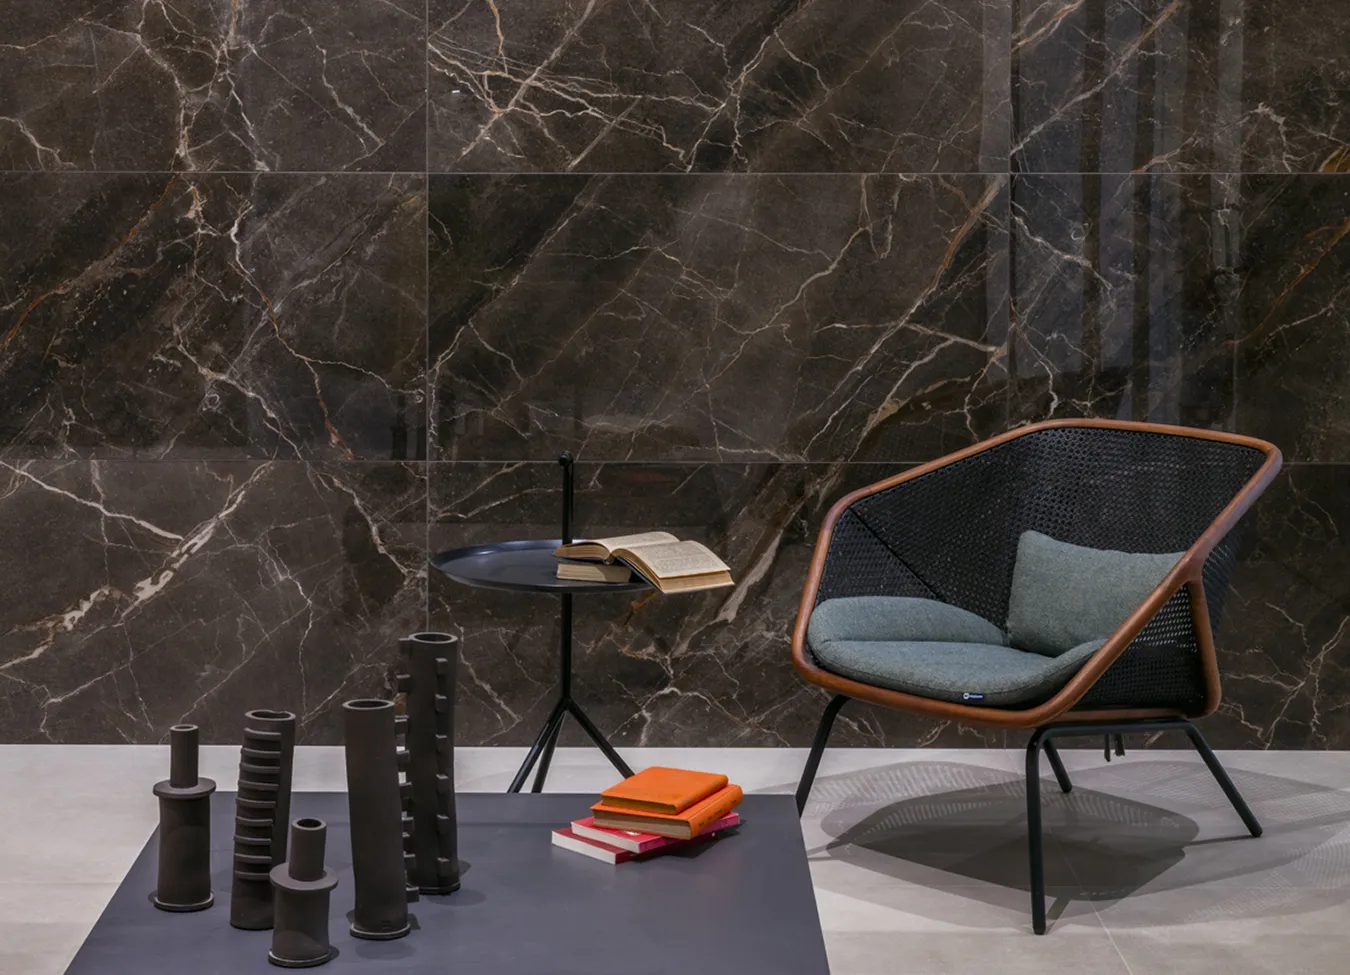 Pared elegante con azulejos porcelánicos efecto mármol Ombra Moca de la colección 9cento, acompañada de silla de diseño y accesorios modernos.